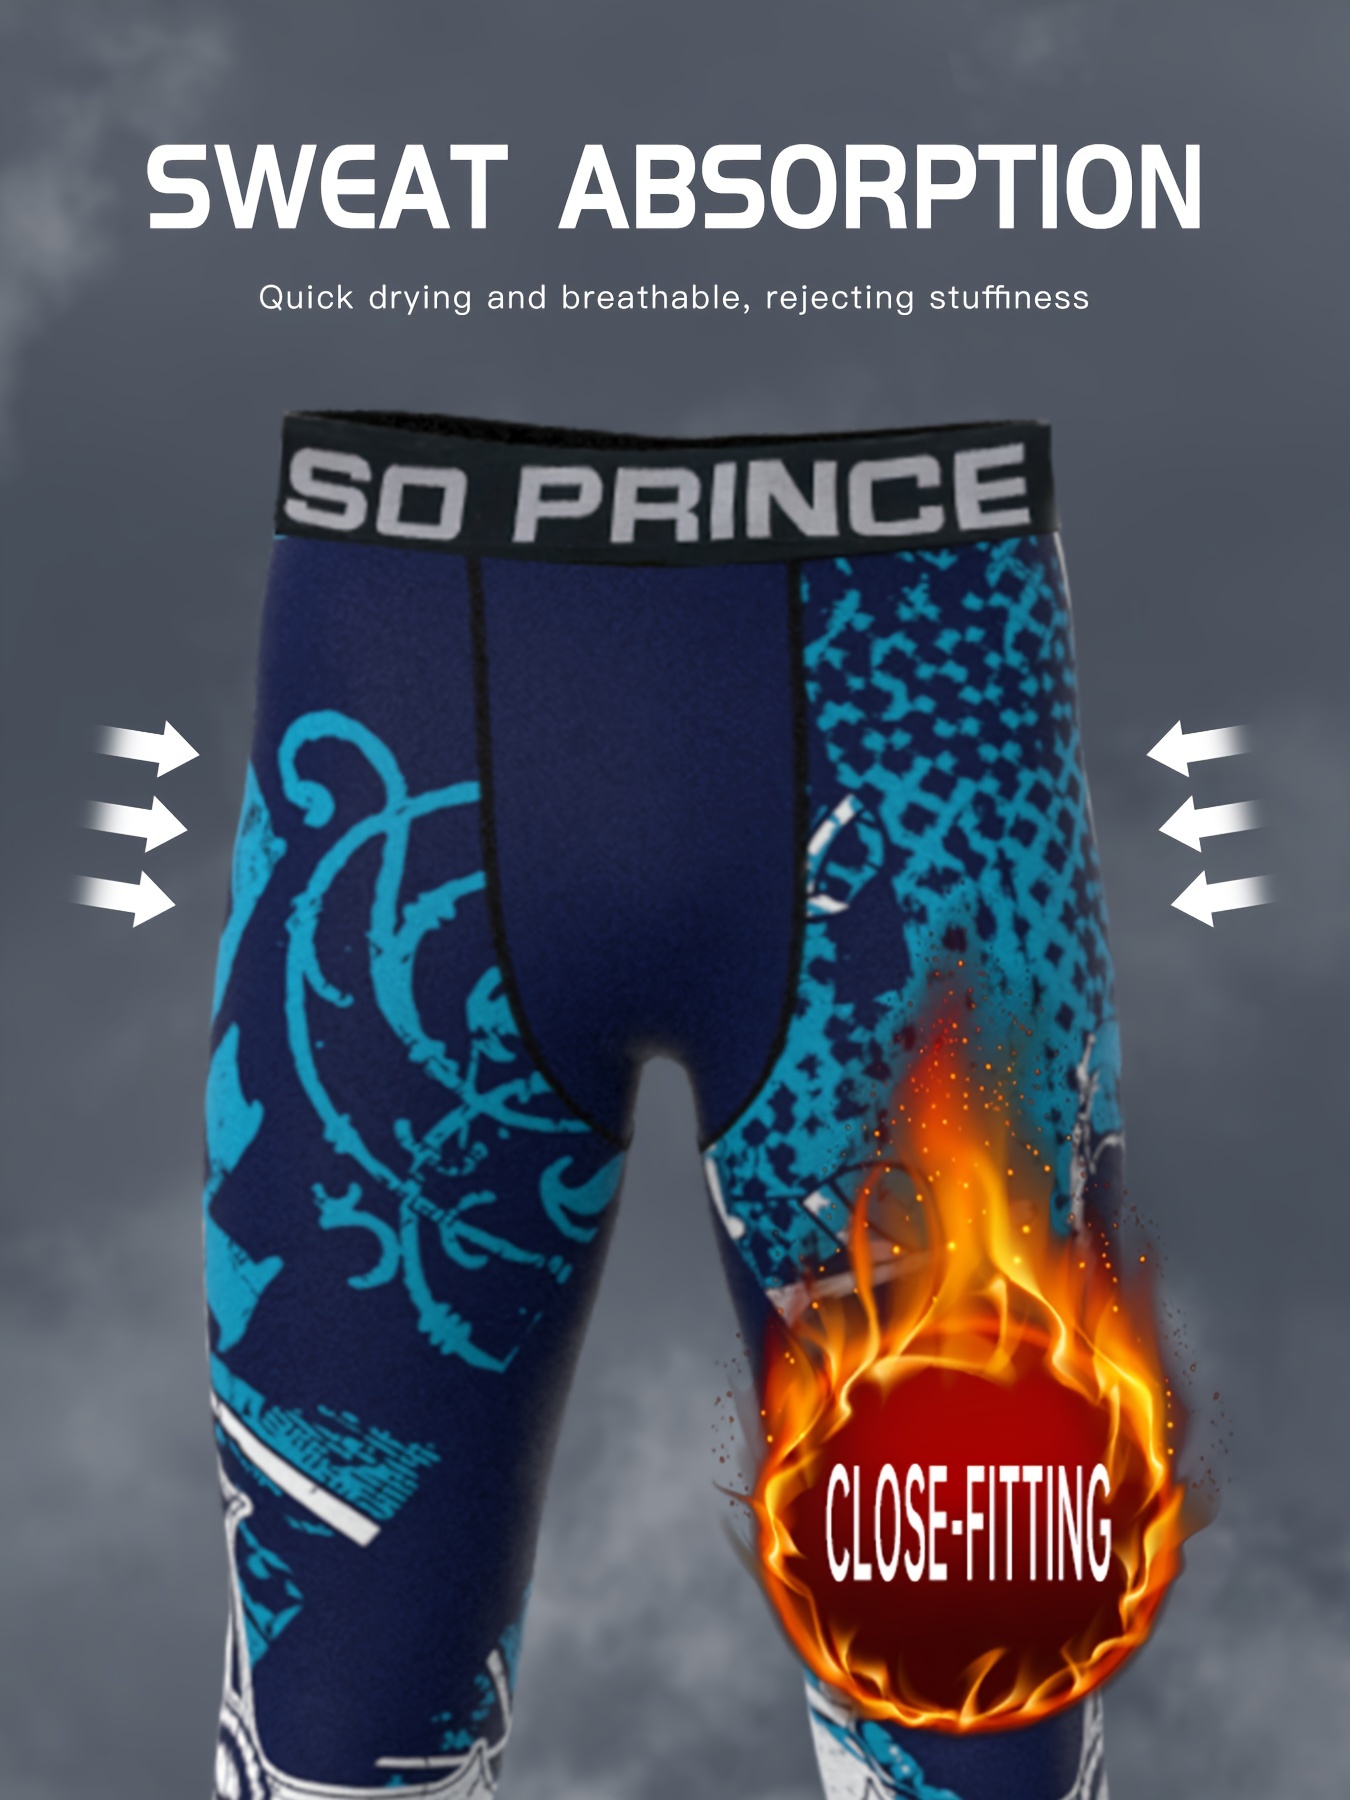 Pantalones de compresión para hombre, mallas deportivas para correr,  Fitness, trotar, entrenamiento, medias transpirables de secado